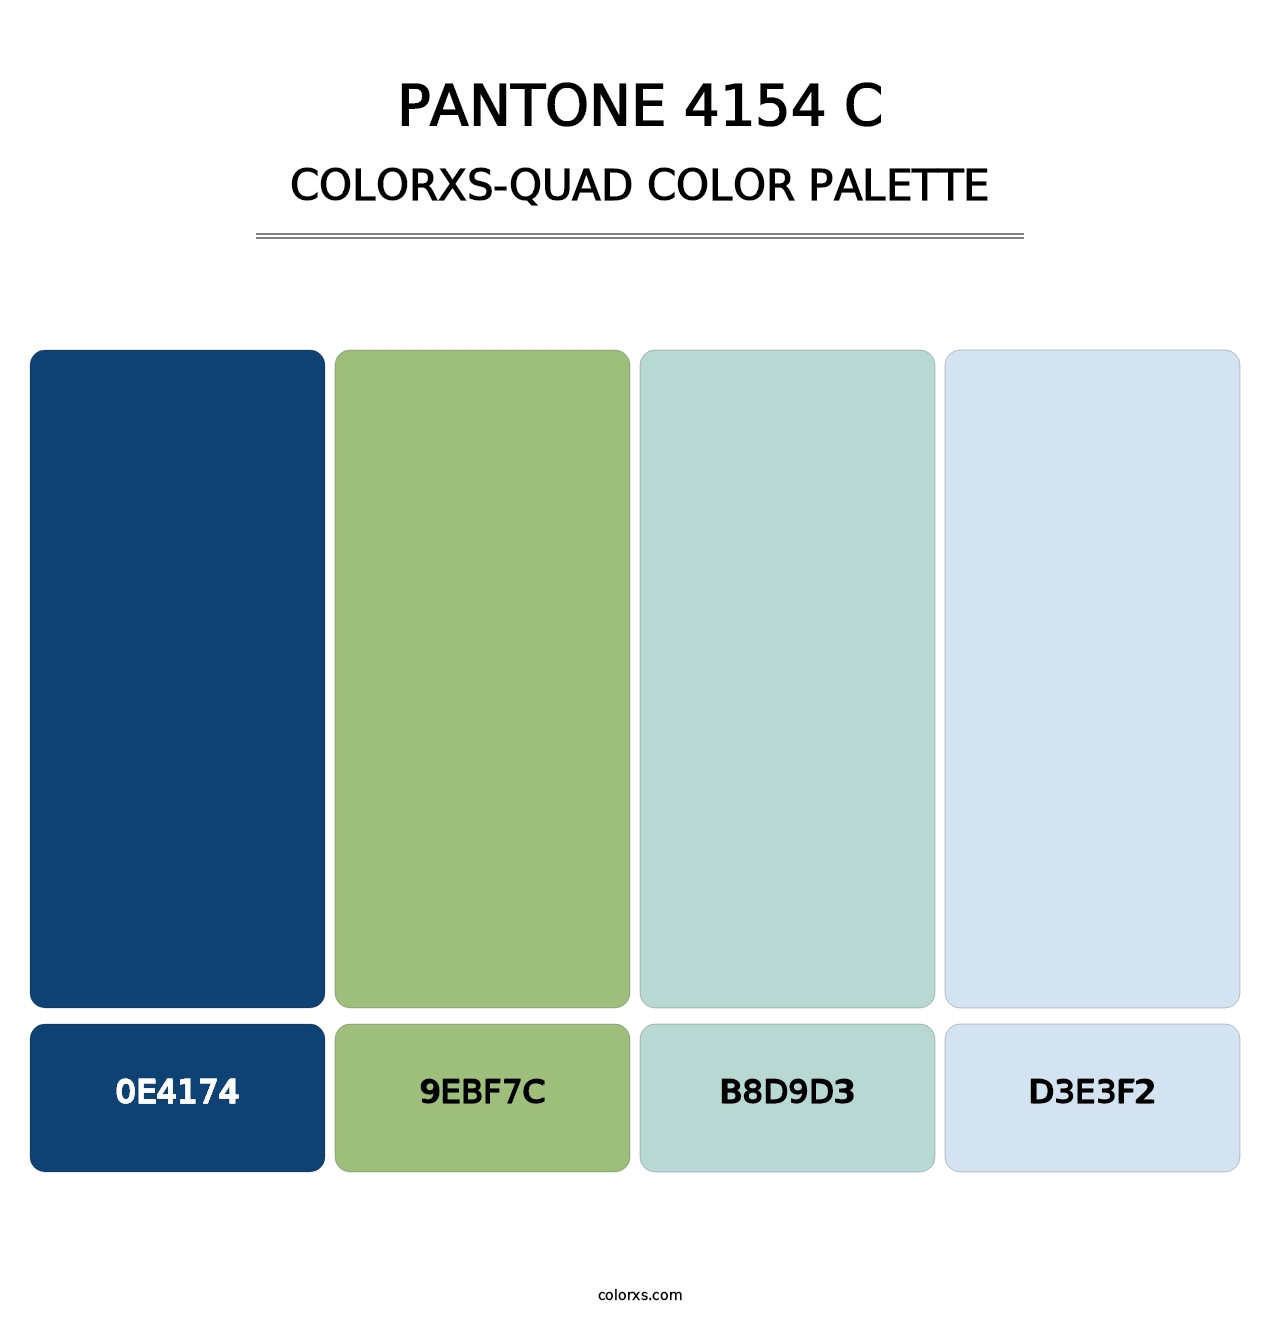 PANTONE 4154 C - Colorxs Quad Palette